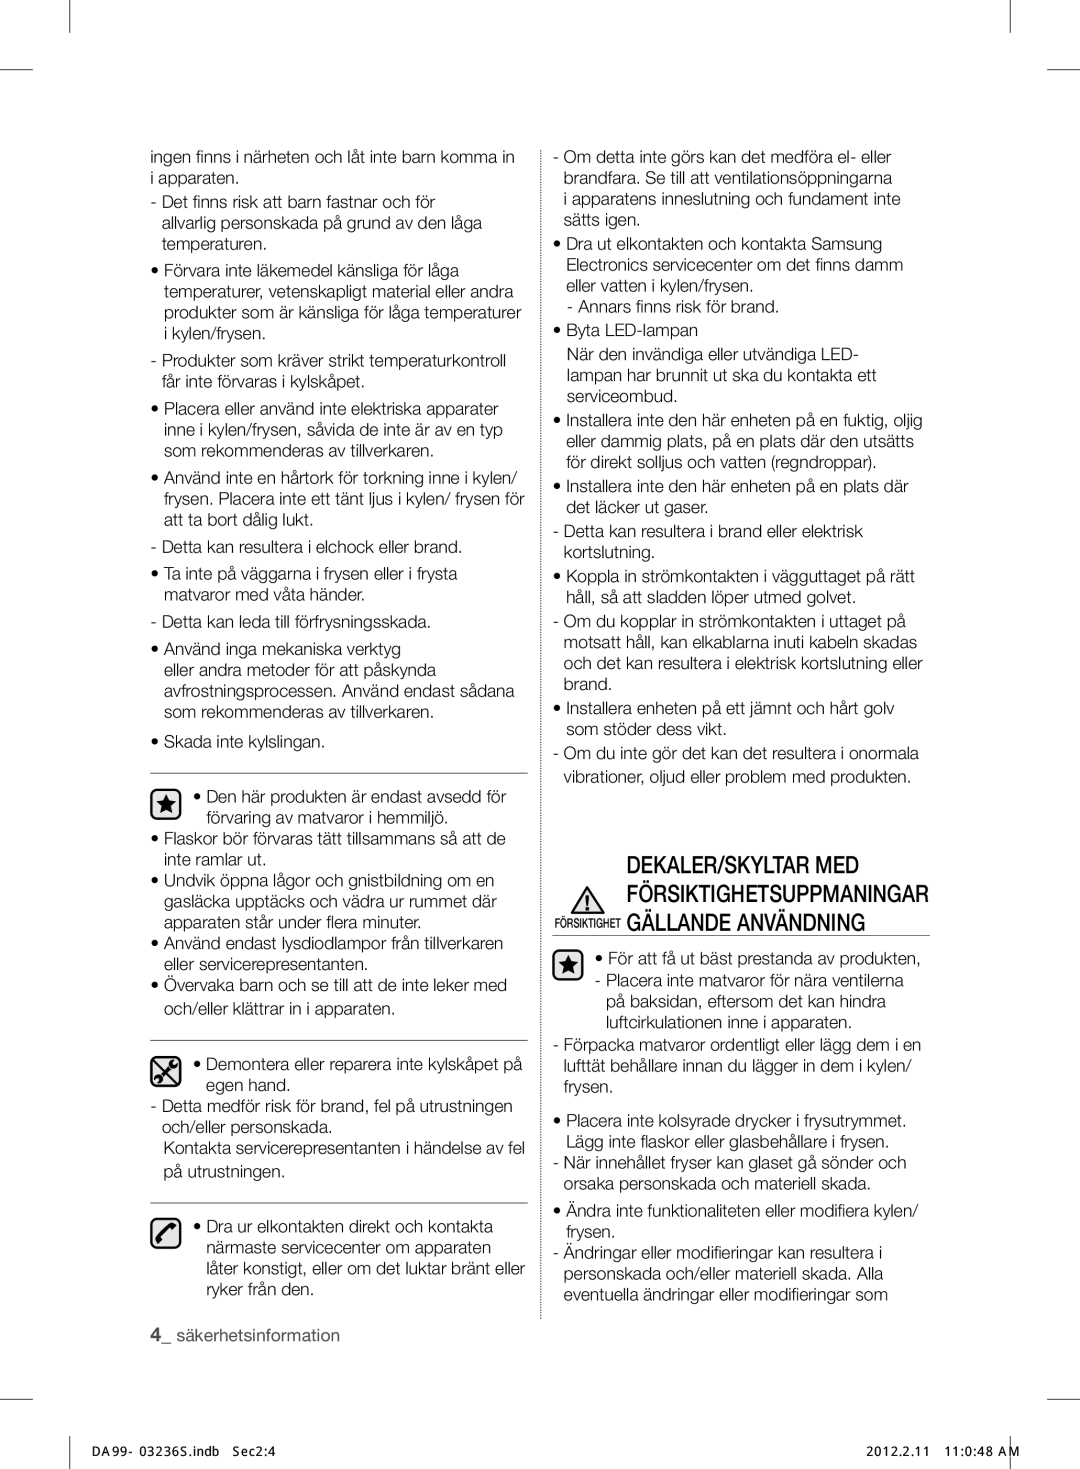 Samsung RL39TJCSW1/XEF manual Försiktighet Gällande Användning, Ändra inte funktionaliteten eller modiﬁ era kylen/ frysen 